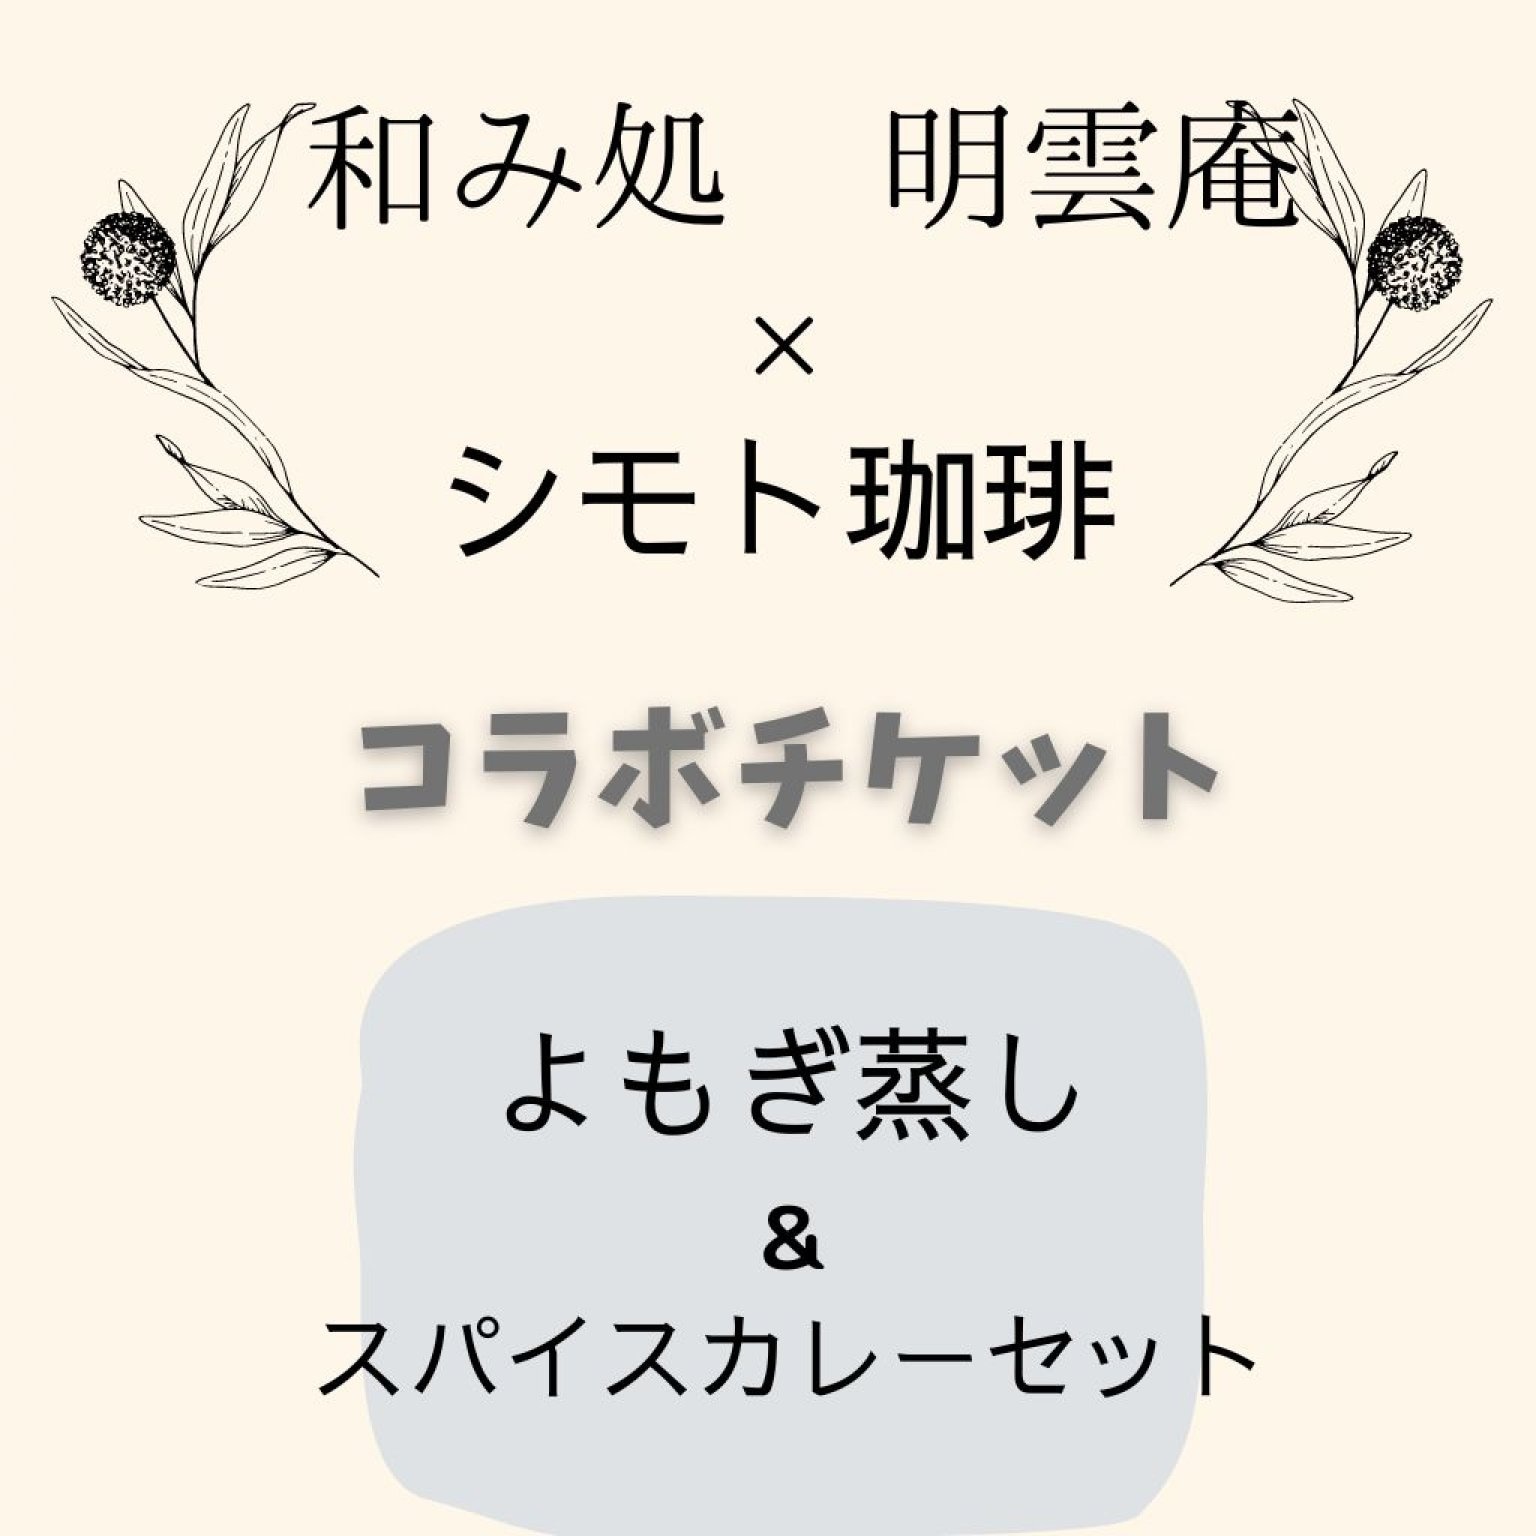 ✨シモト珈琲 × 和み処 明雲庵✨　☘️コラボチケット☘️ よもぎ蒸し & ランチセット